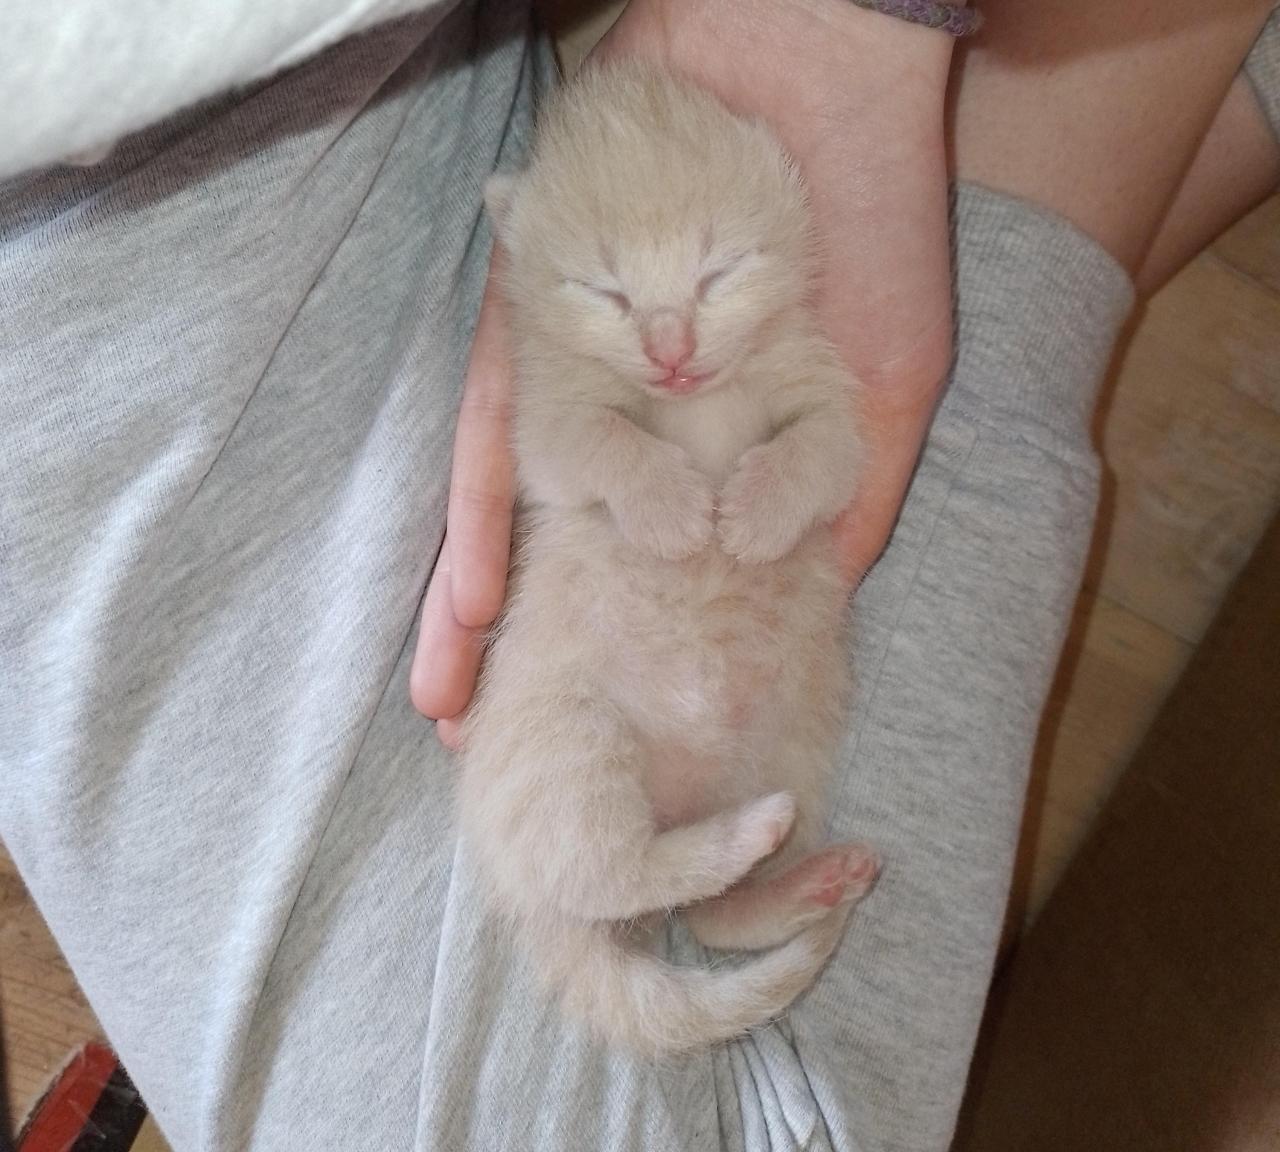 one week old kitten 🥺 via /r/Eyebleach https://ift.tt/2ZOJnpT #cute#wholesome#funny#happy#reddit#animals#puppy#kitten